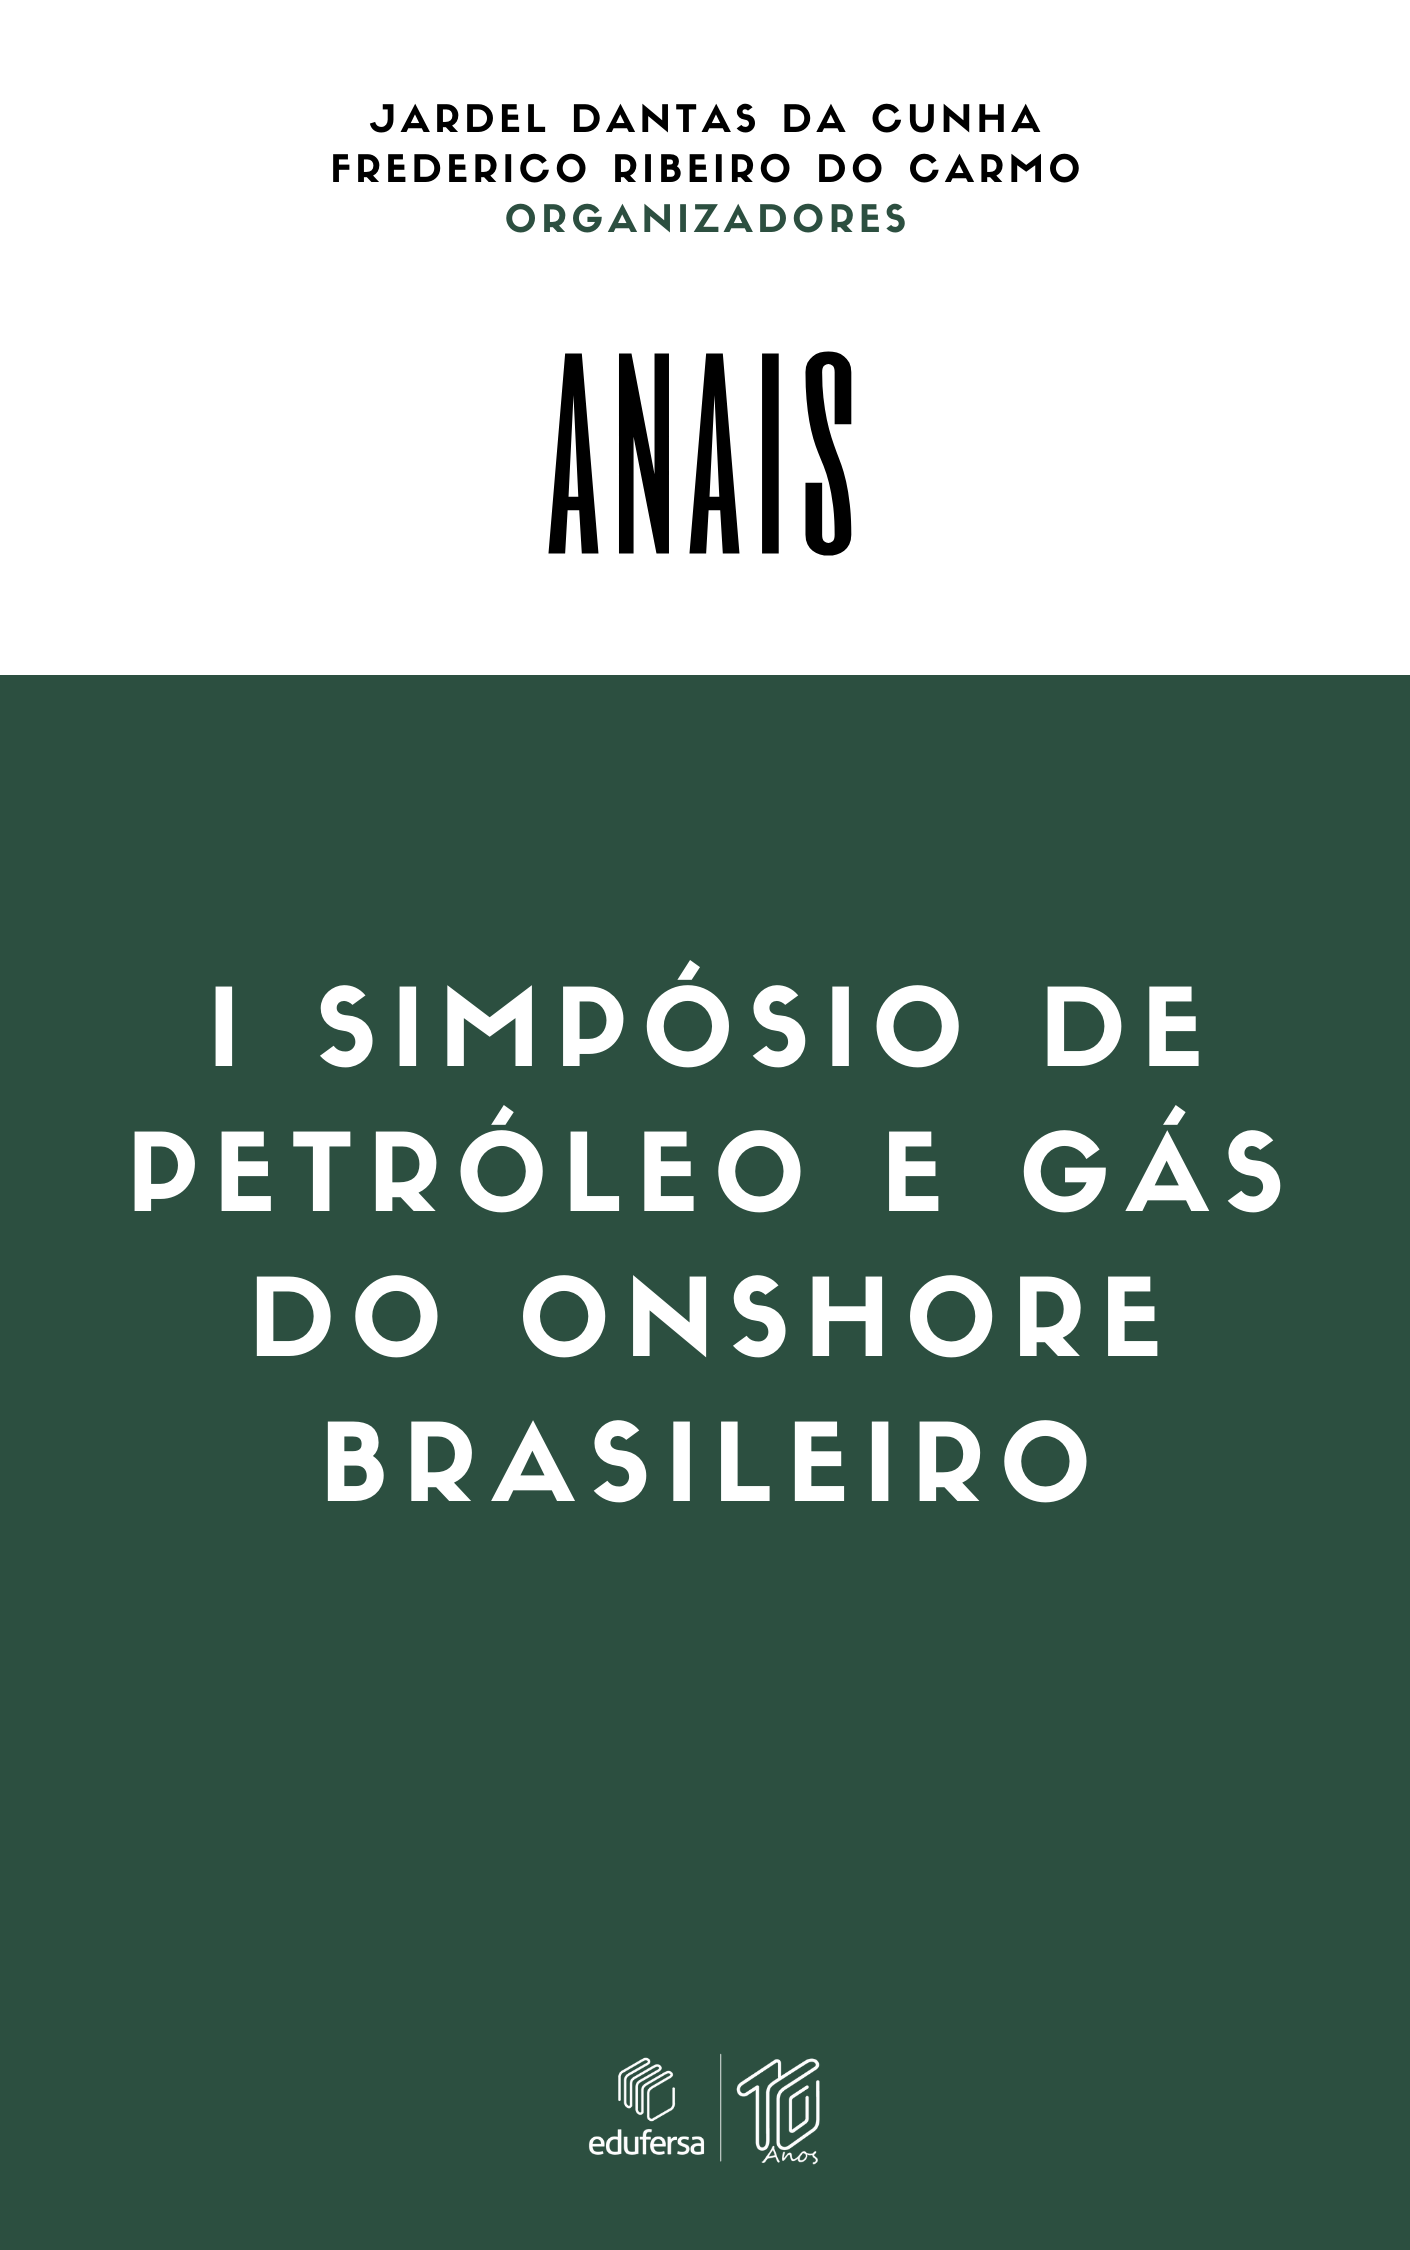 					Ver 2021: I Simpósio de Petróleo e Gás do Onshore Brasileiro
				